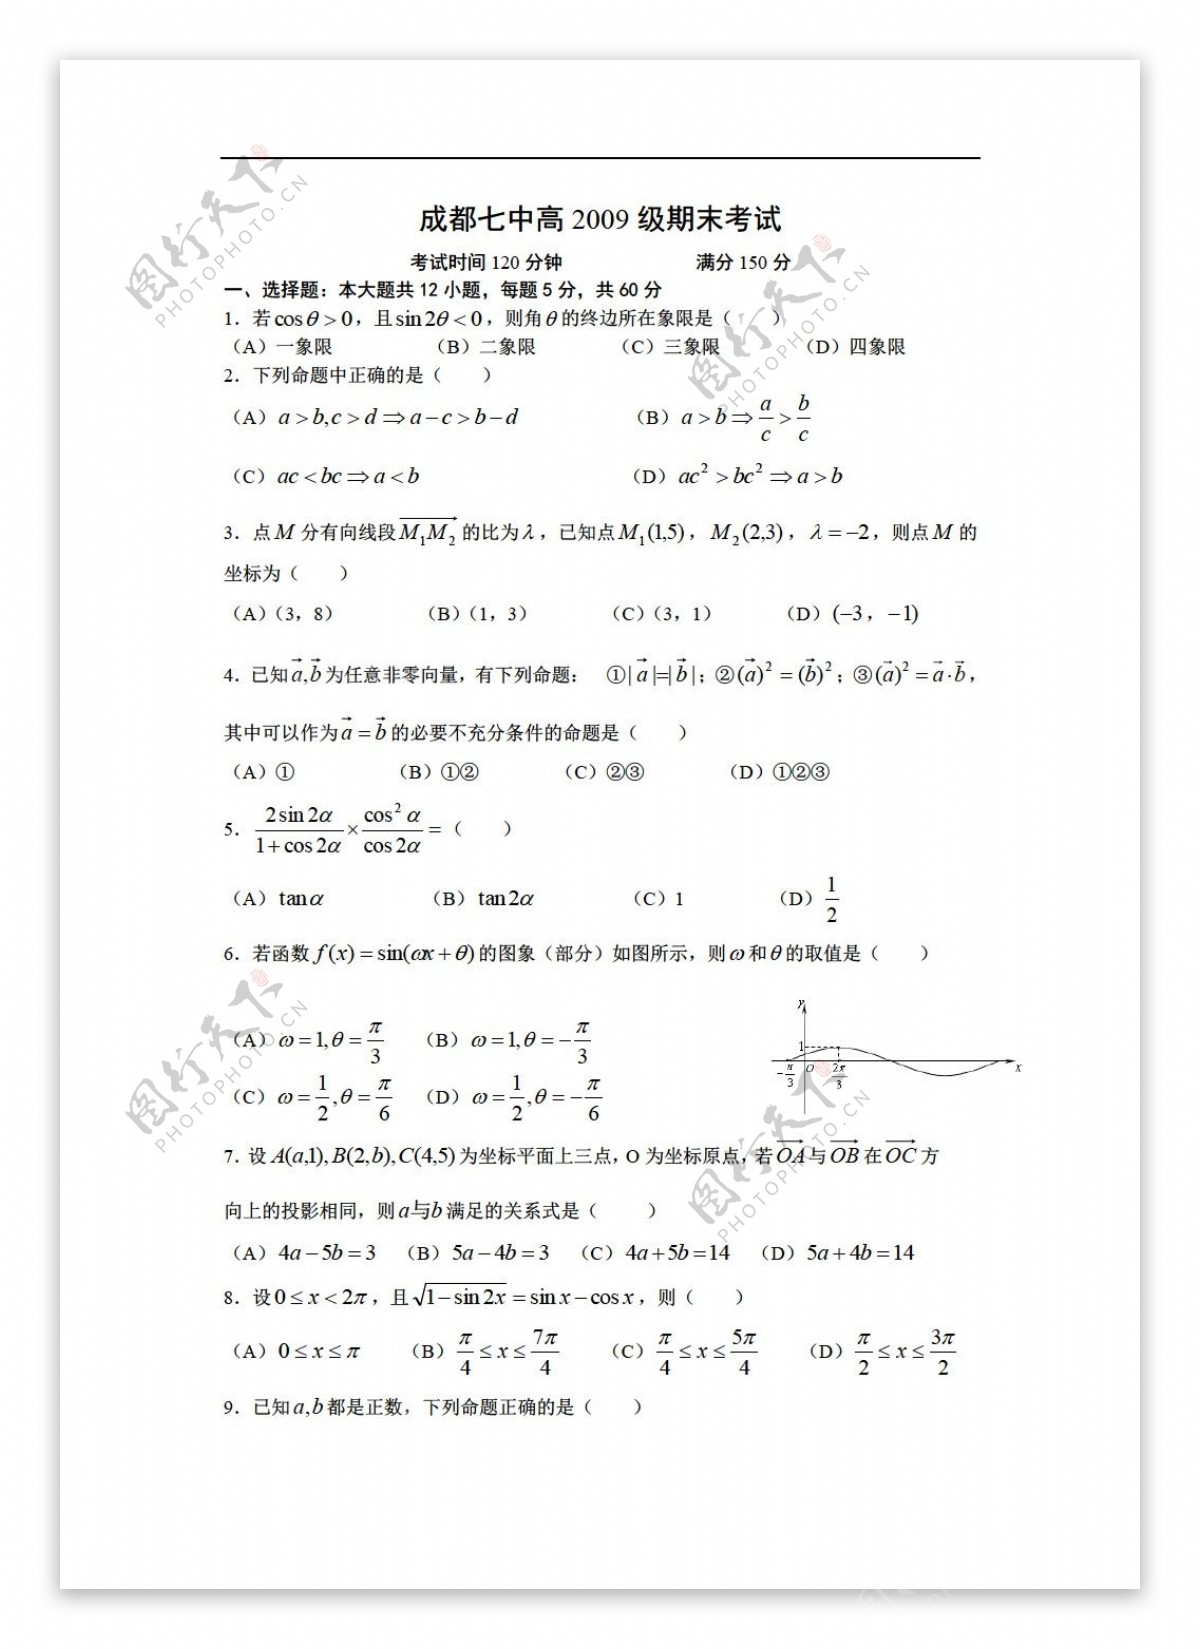 数学人教版四川省成都七中高2009级第二学期期末考试题